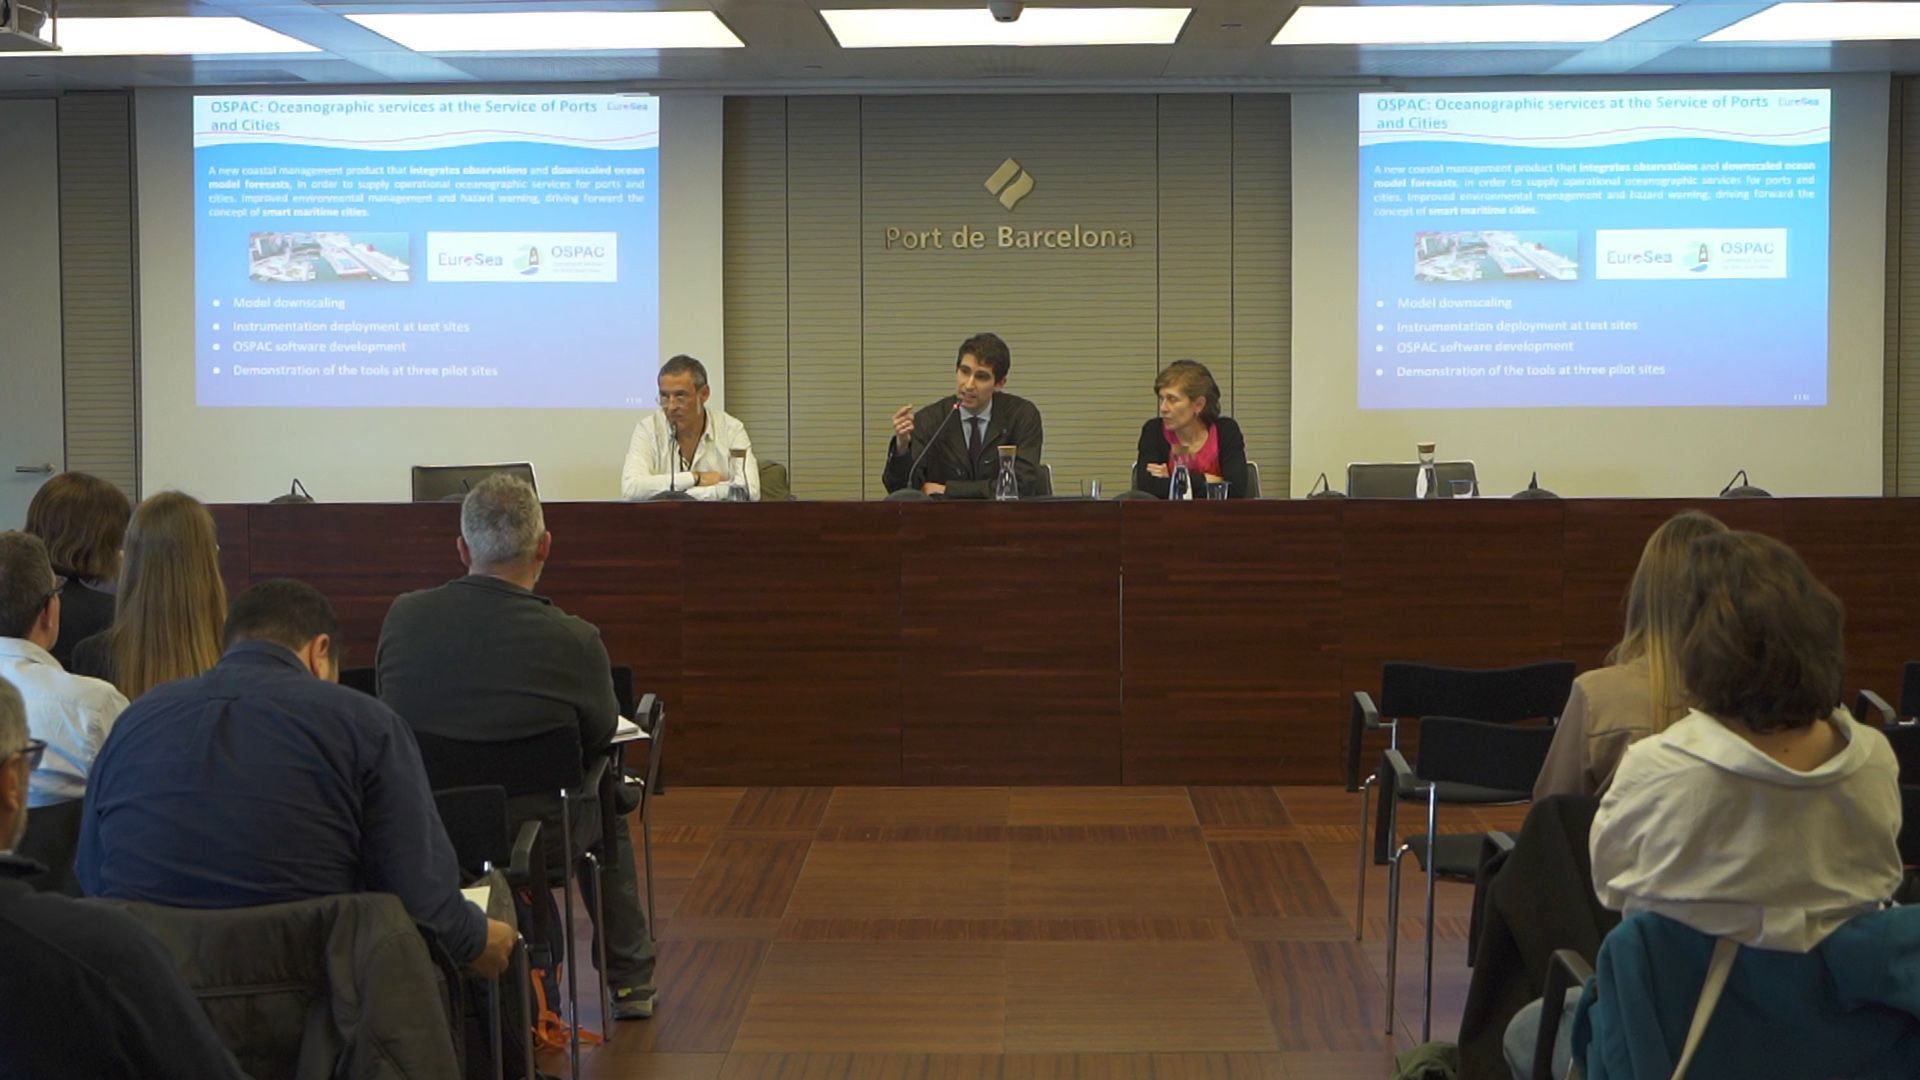 El Port de Barcelona fue el escenario elegido para presentar la herramienta OSPAC. (PierNext)